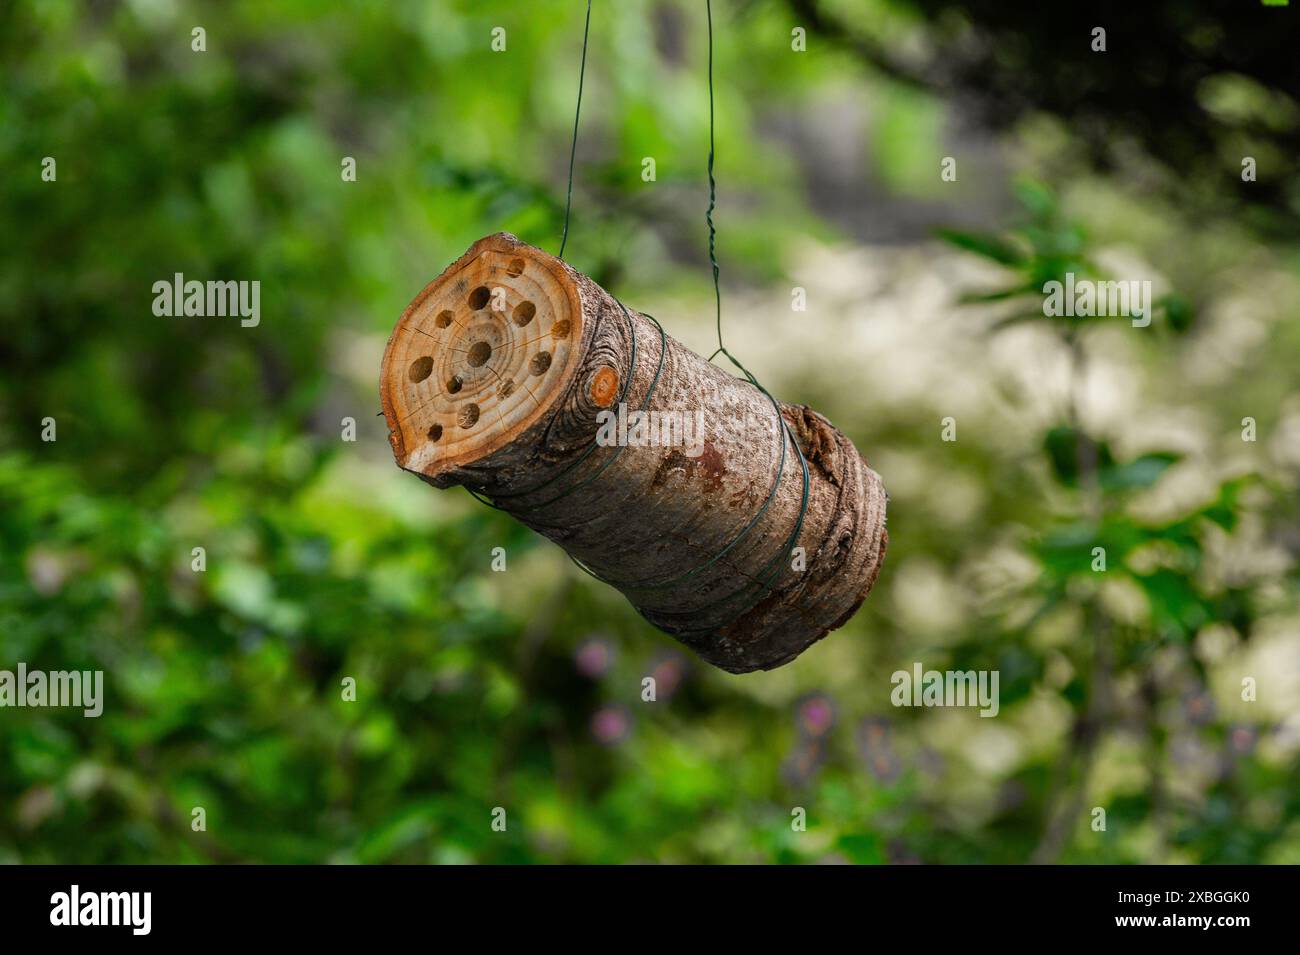 Un tronco di api appeso (casa degli insetti). Il tronco è stato ricavato da un piccolo tronco di albero ed è appeso ad un albero. Foto Stock